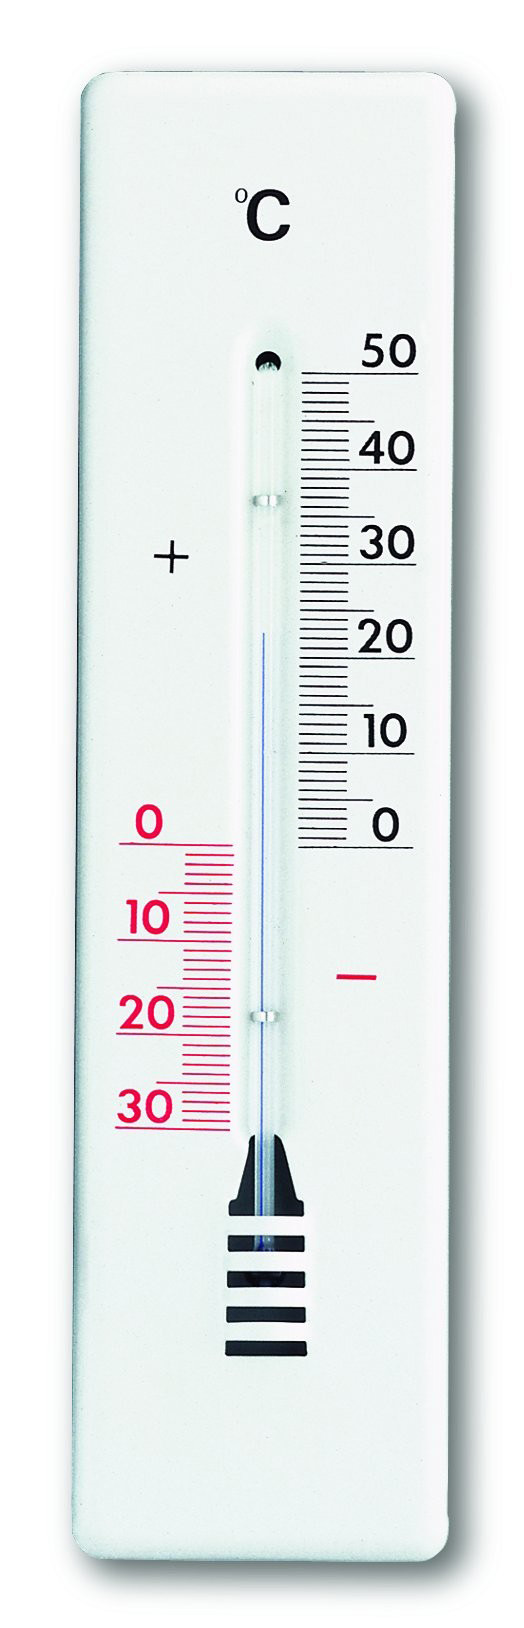 Thermomètre analogique